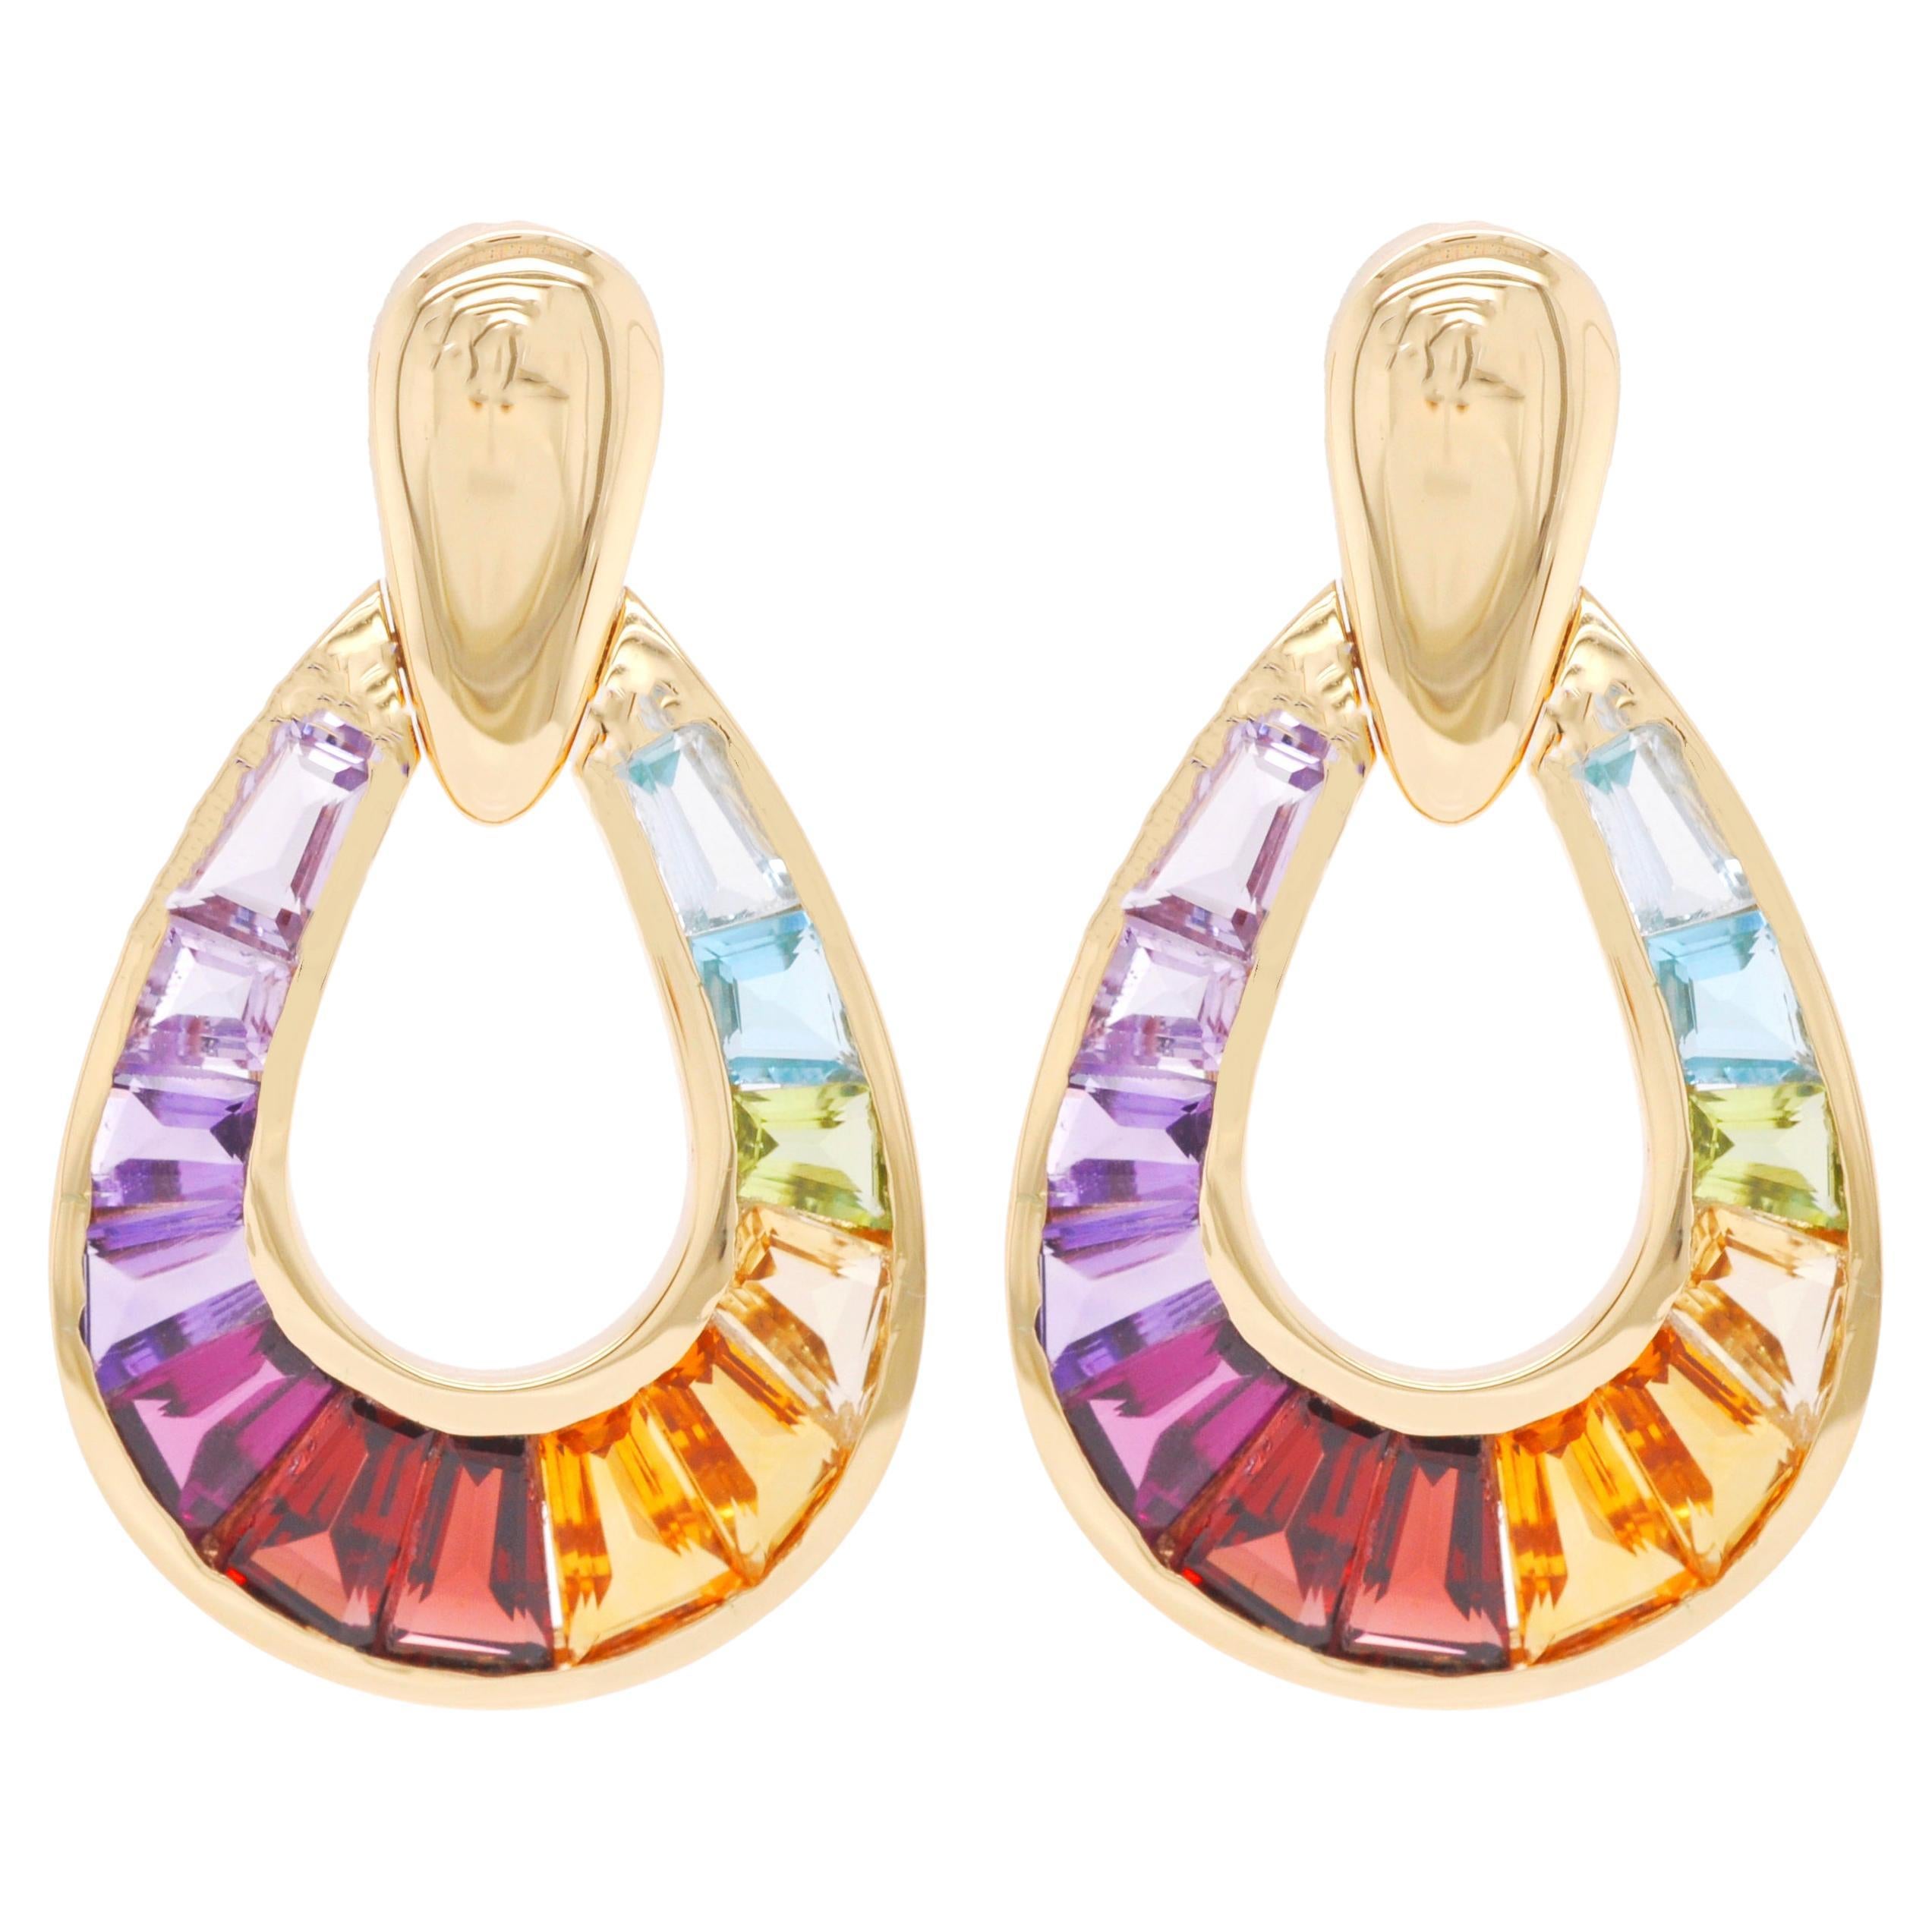 18 Karat Gold Regenbogen-Ohrringe mit Regenbogen-Taper-Edelsteinen und Ohrhänger